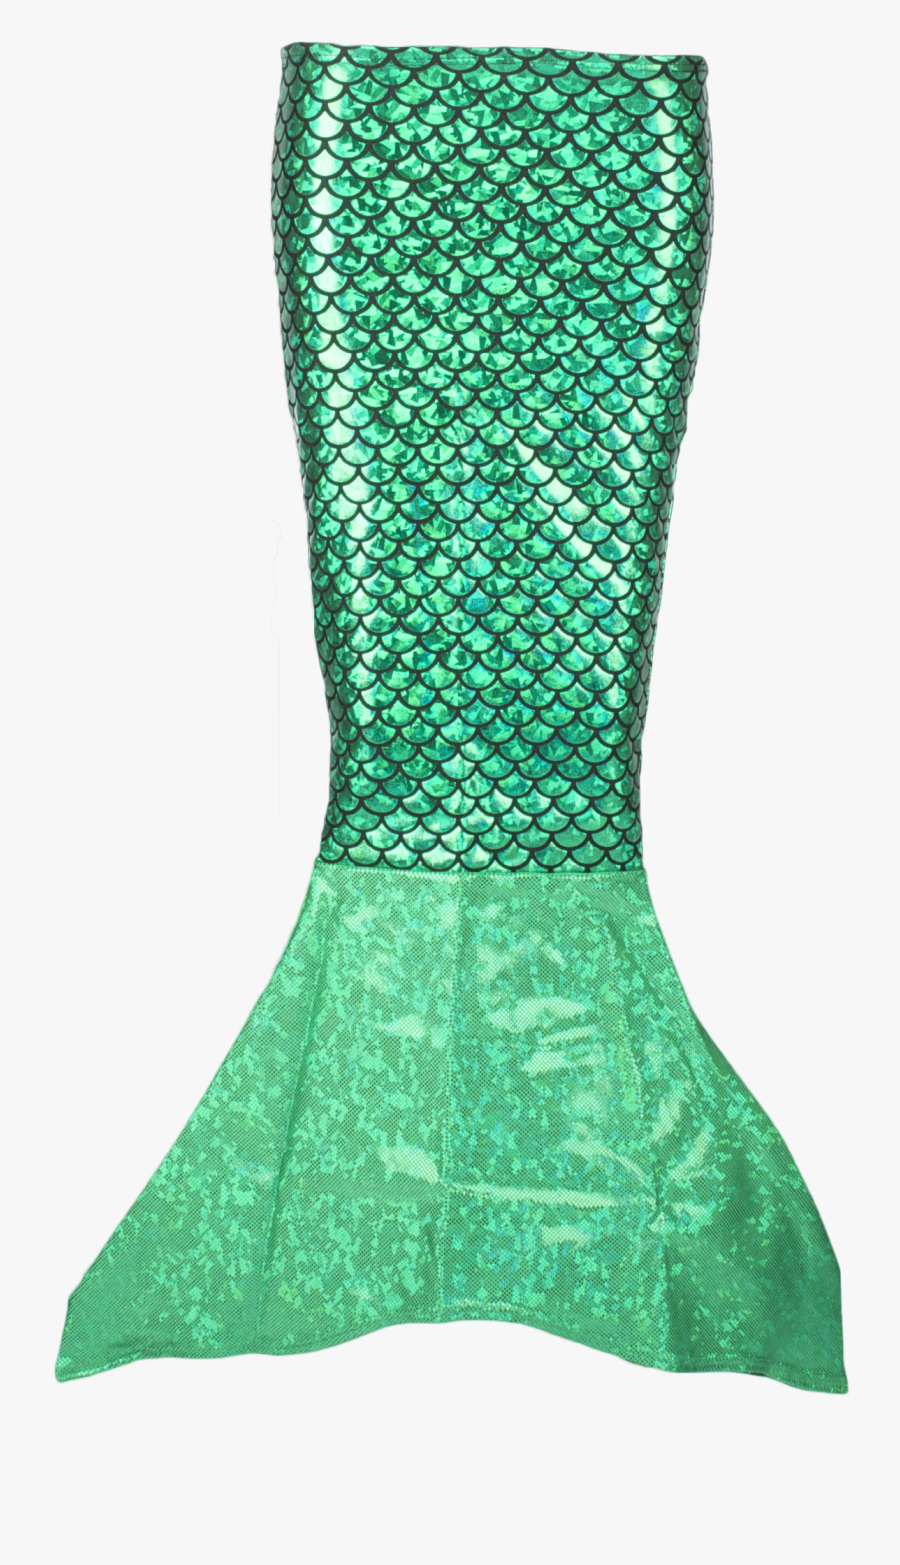 Ariel's Tail Png, Transparent Clipart